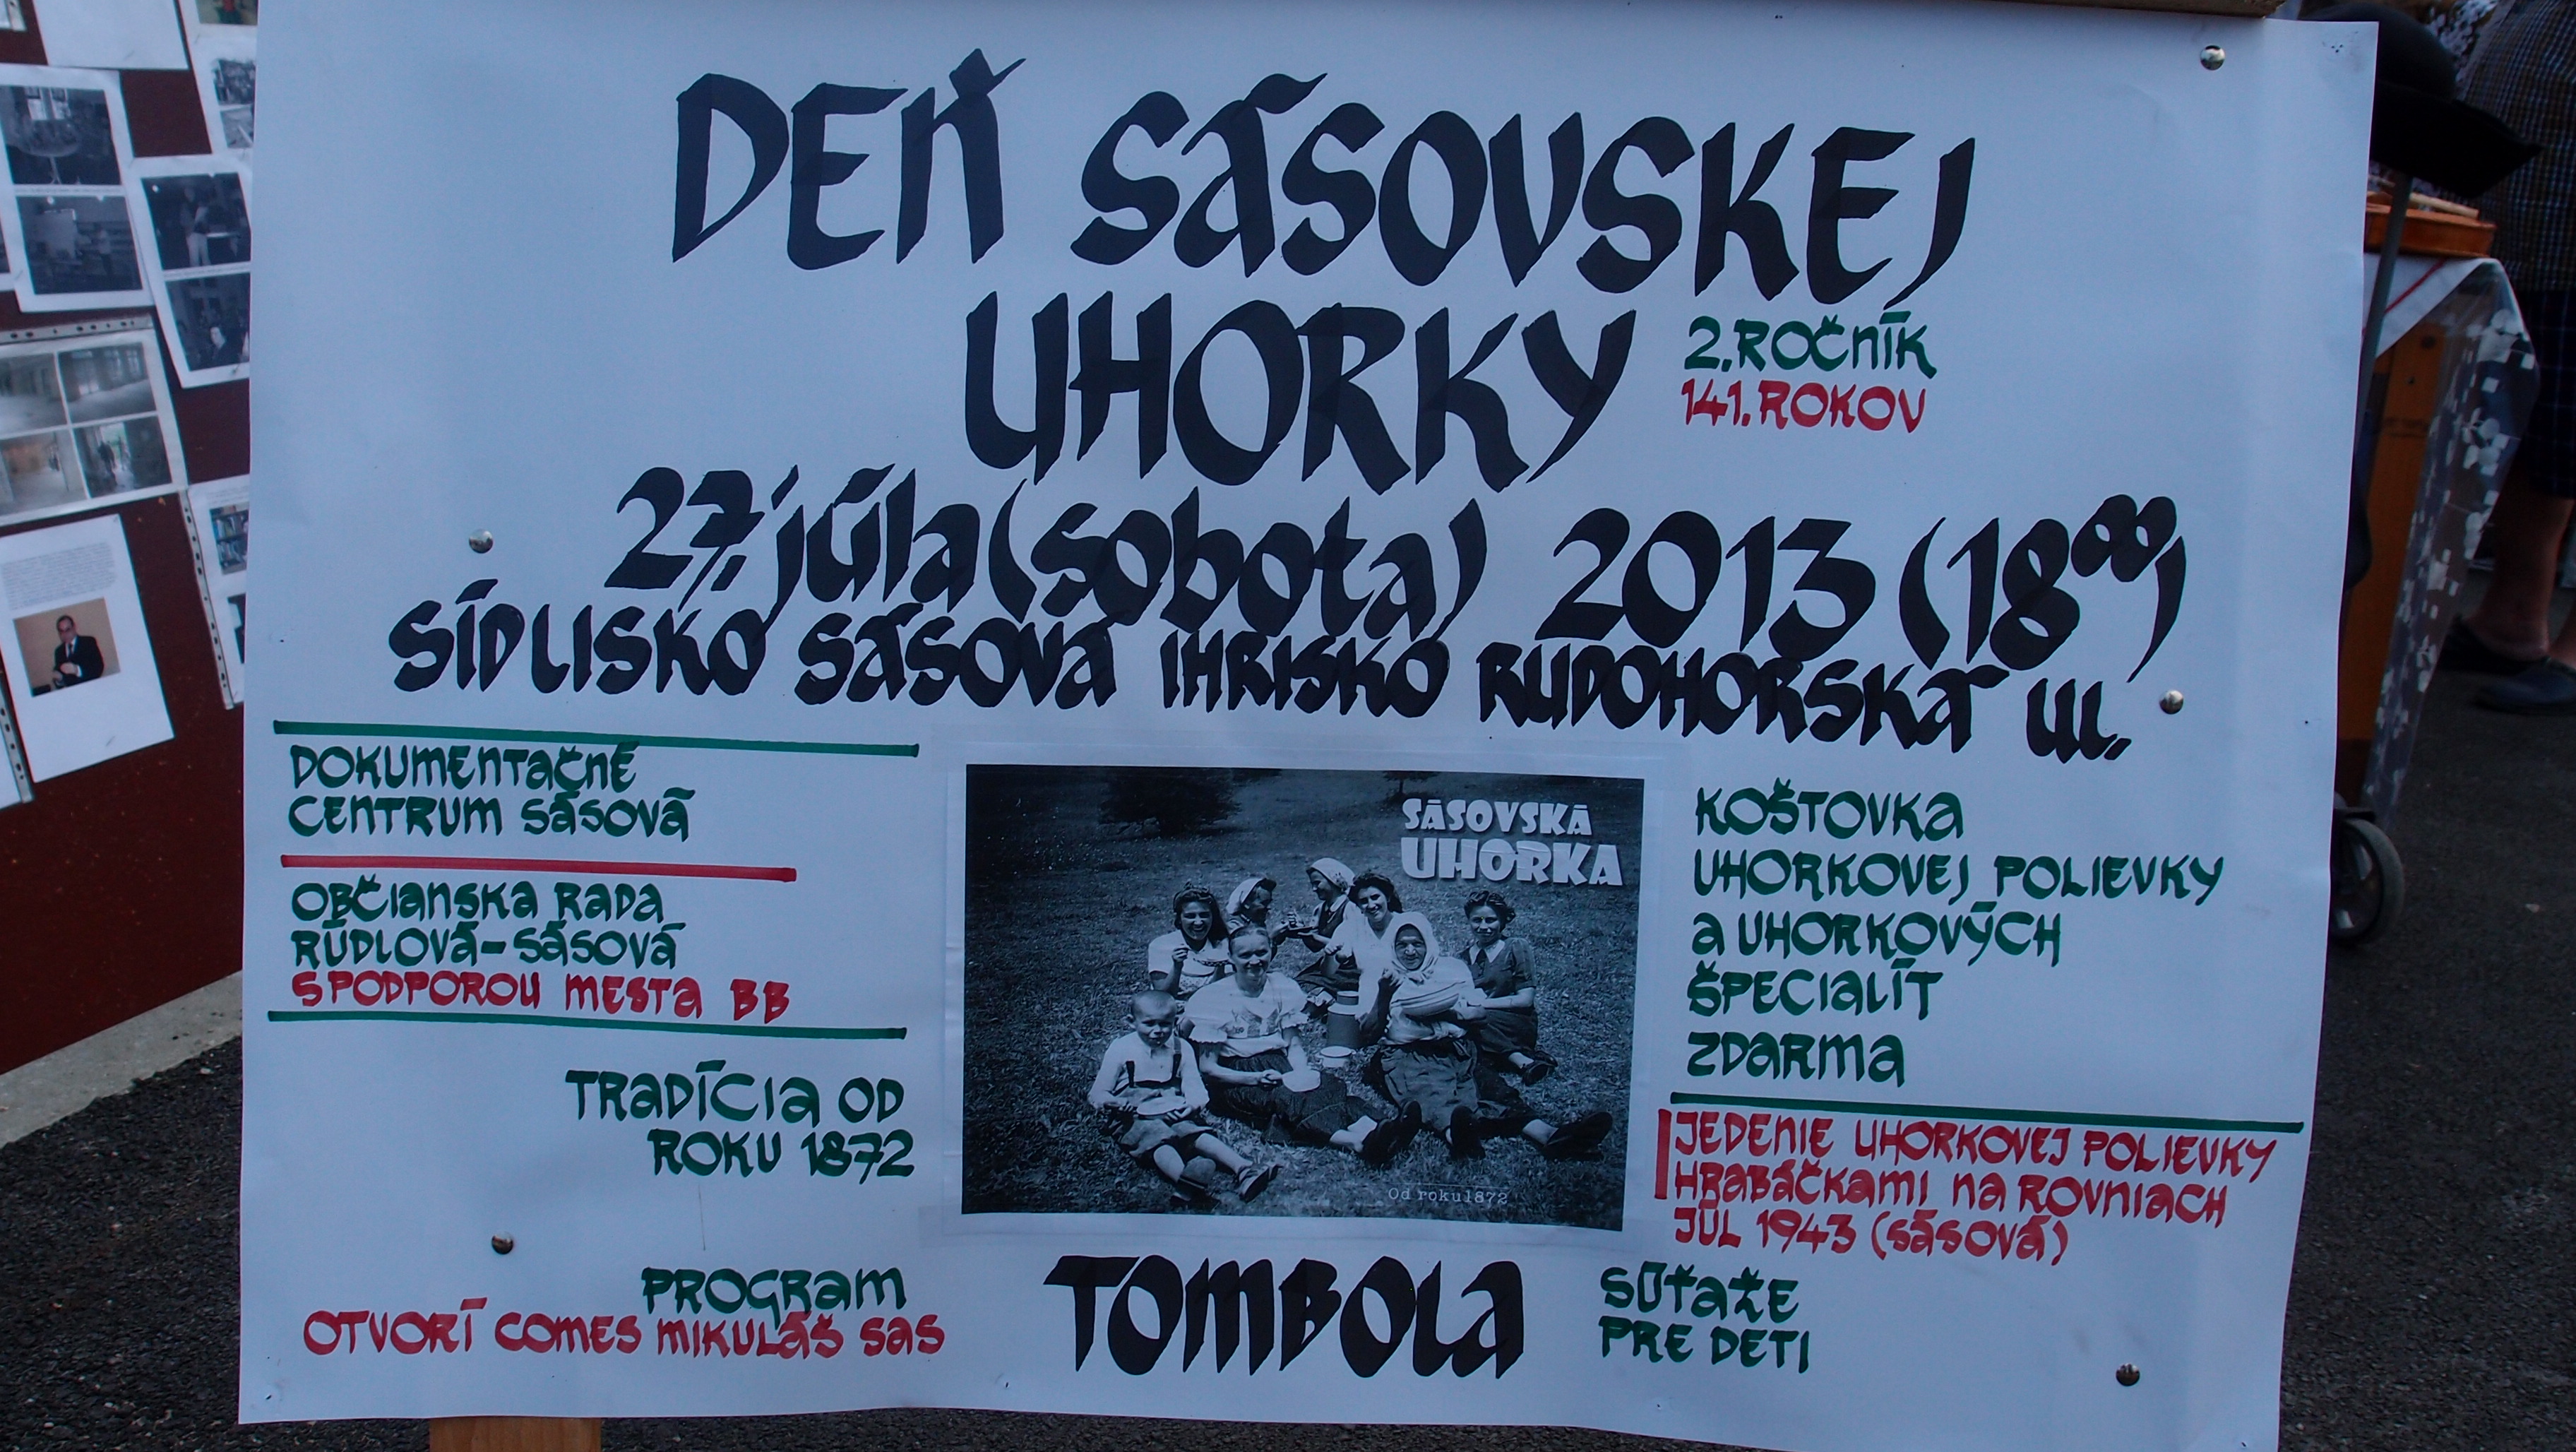 Deň Sásovskej uhorky 2013 - 2.ročník